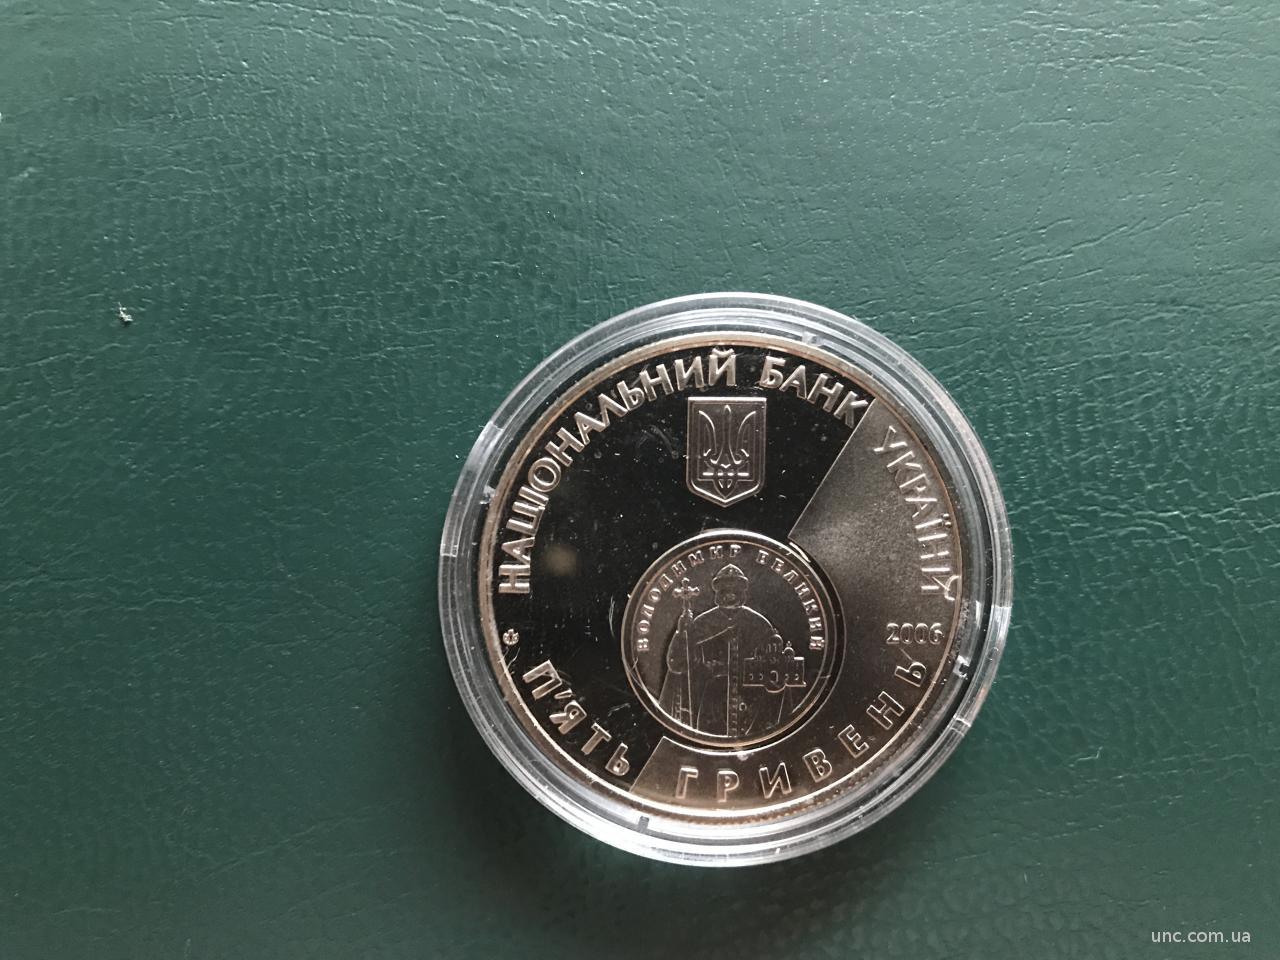 Юбилейная монета, отчеканенная в честь 10-летнего юбилея возрождения гривны